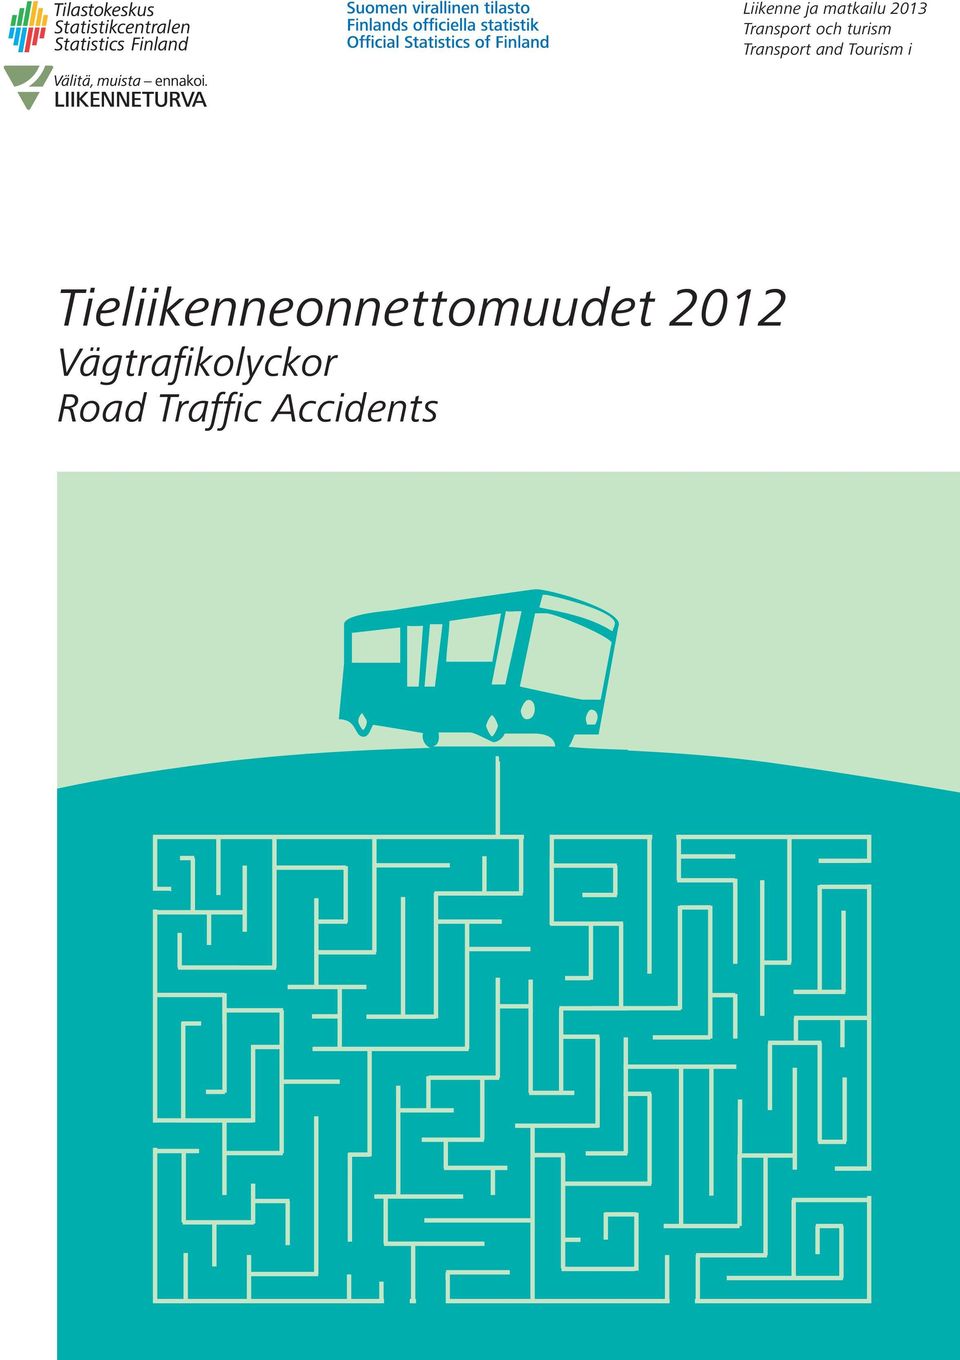 Accidents Liikenne ja matkailu